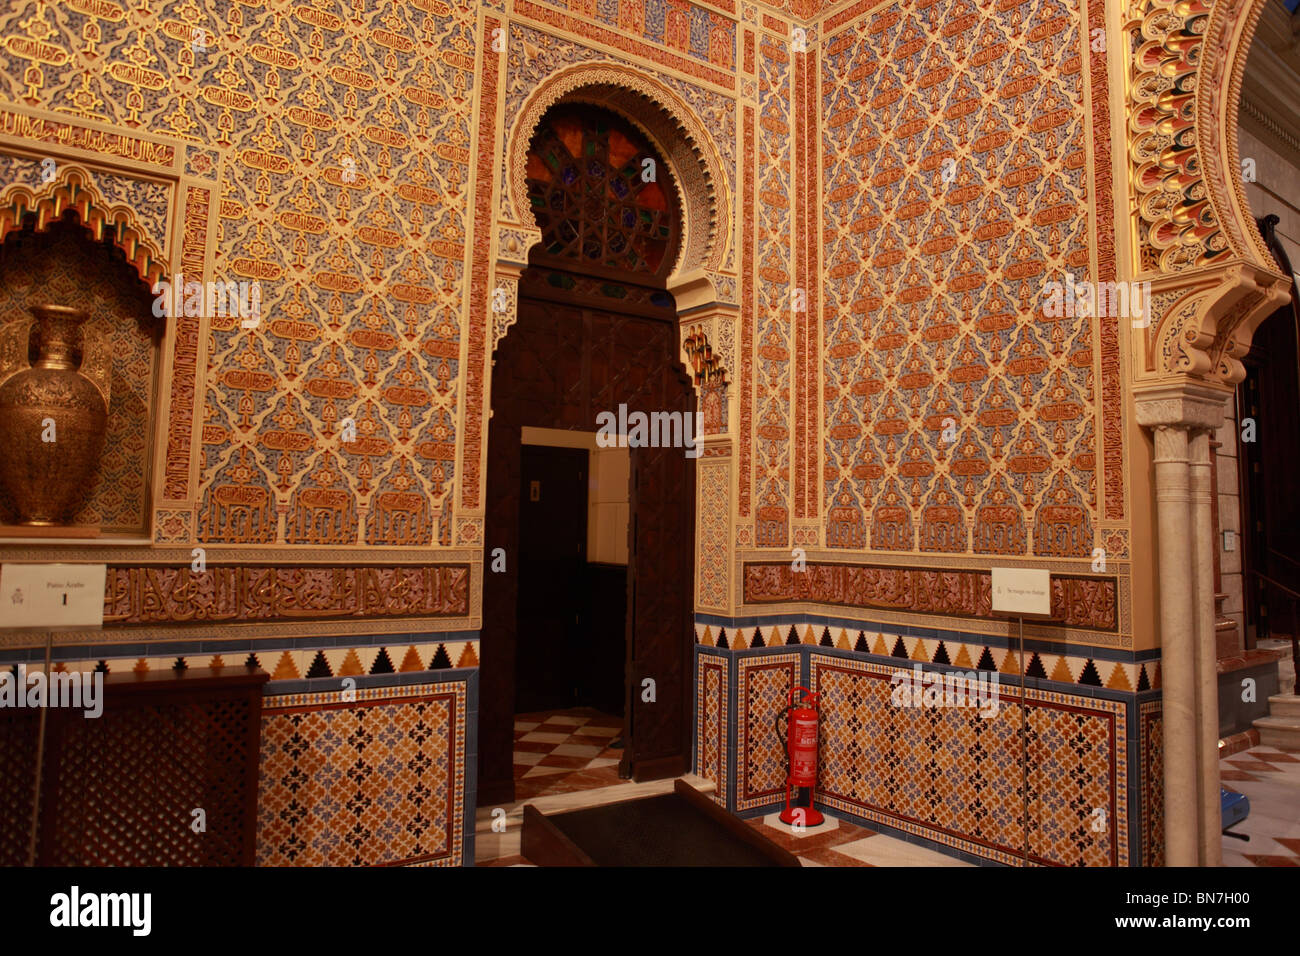 Lo spagnolo casinò in stile marocchino Foto Stock